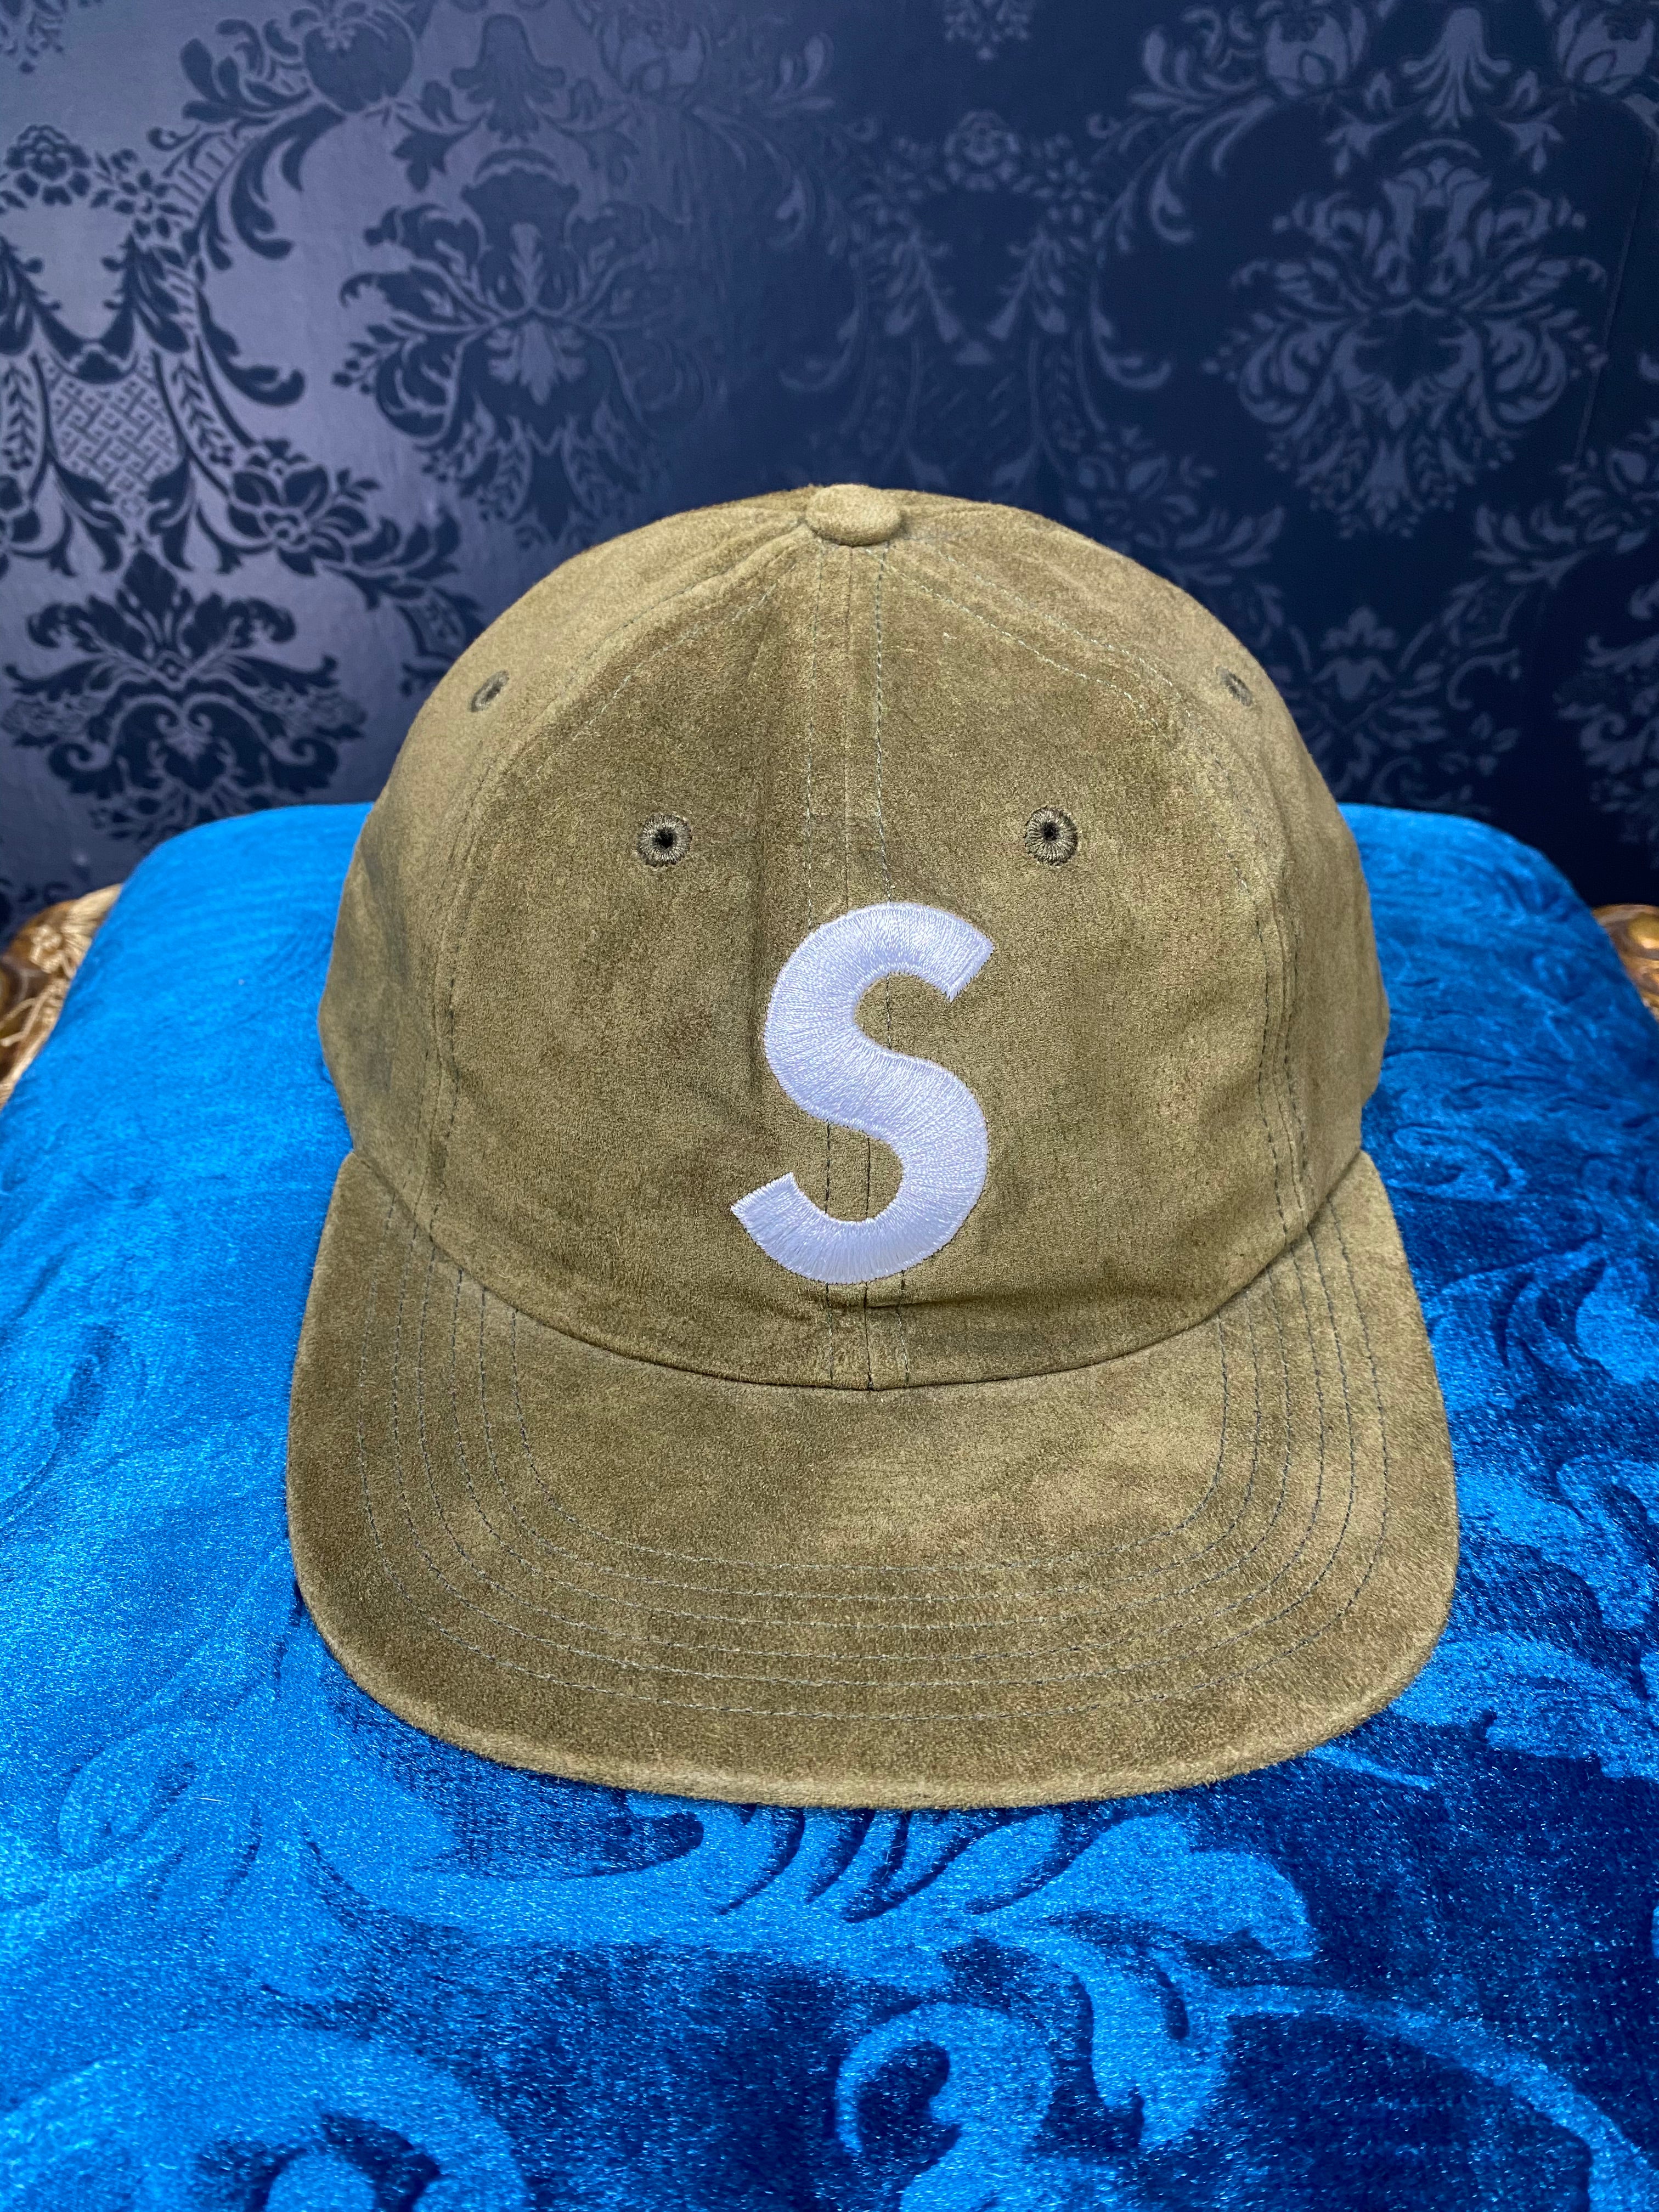 Supreme big "S" logo hat suede